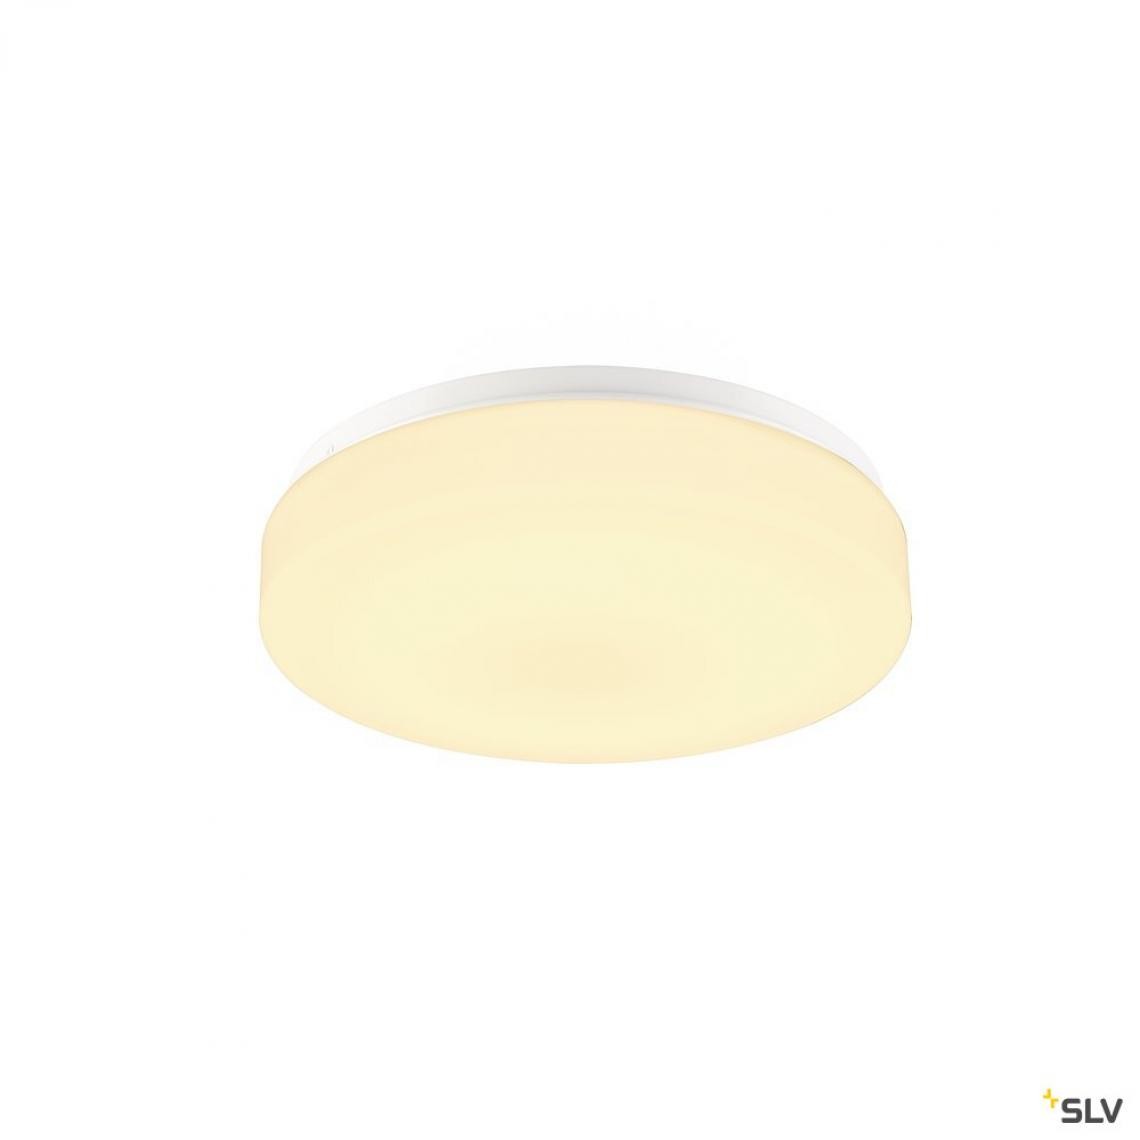 Slv - Applique et plafonnier intérieur rond LIPSY® 30, Drum, blanc, LED - Ø 30 cm - Applique, hublot